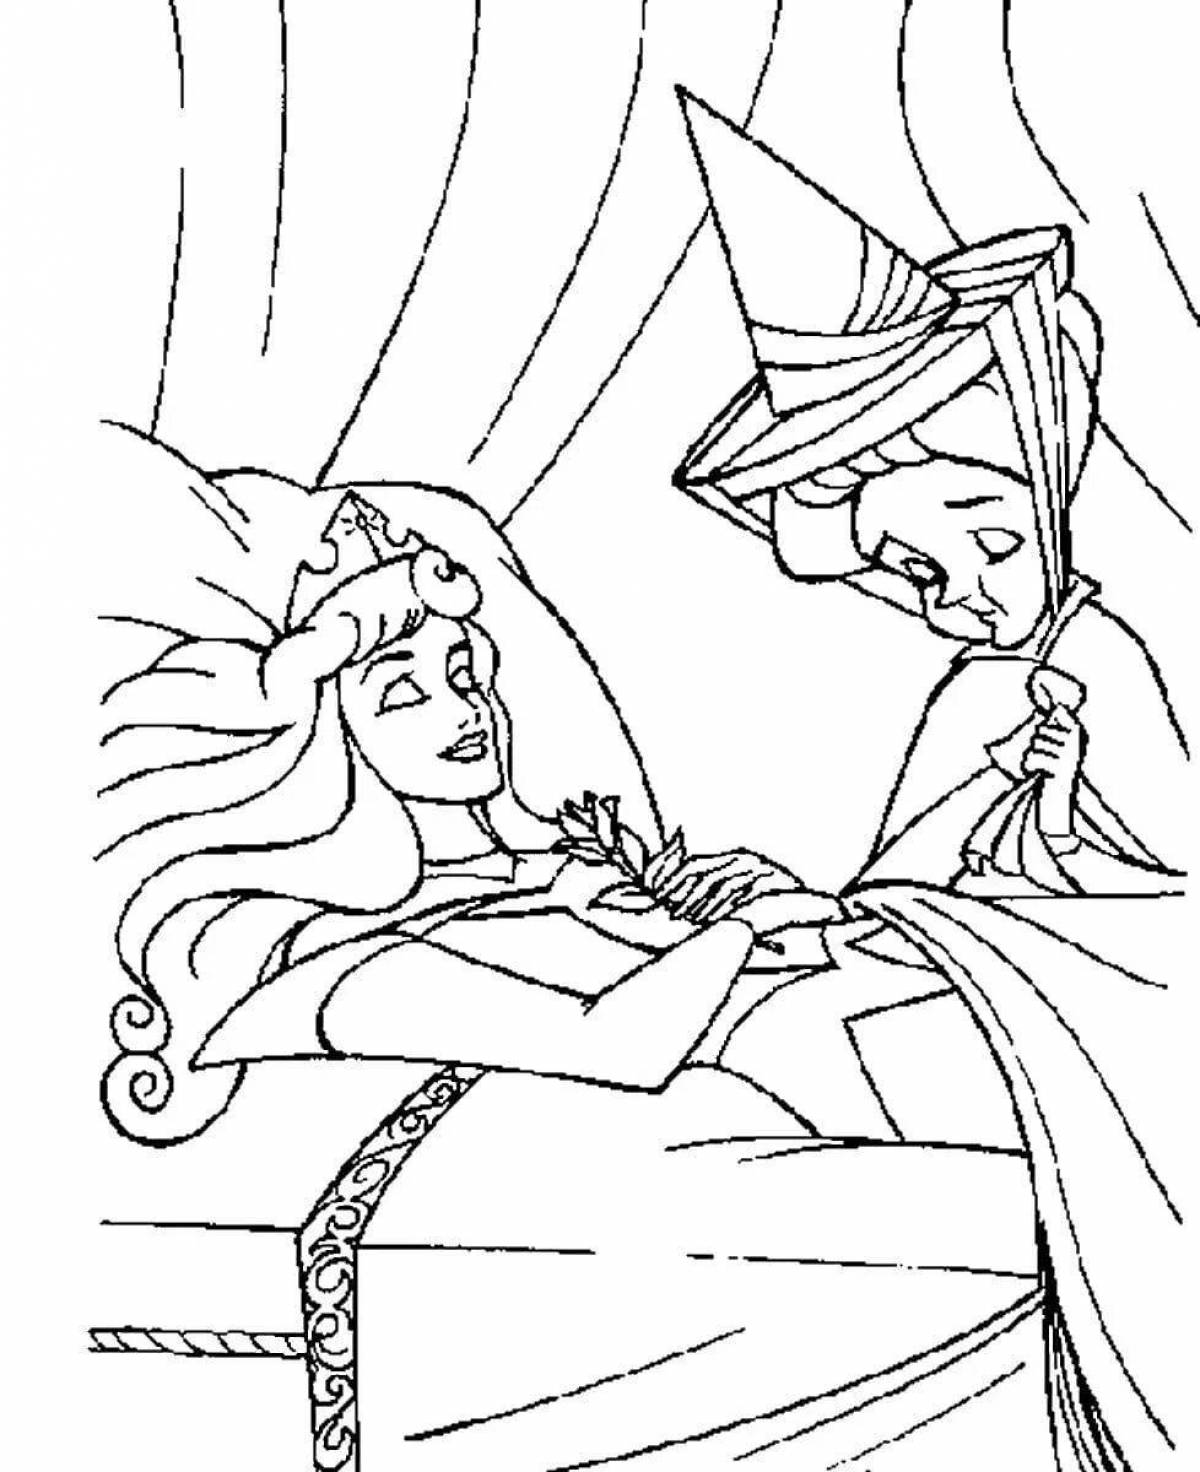 Royal sleeping princess coloring book